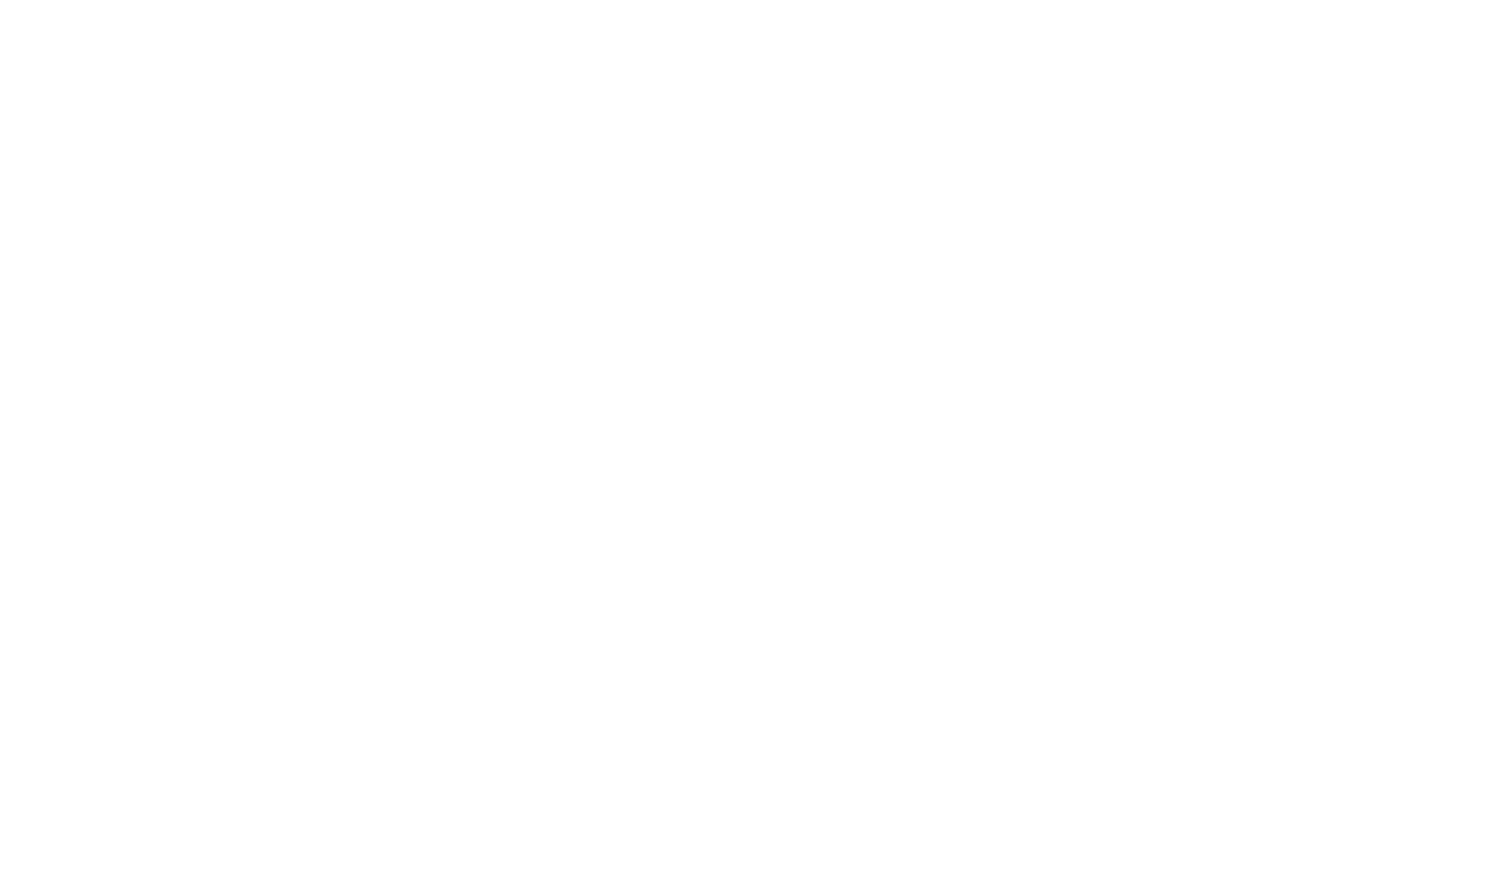 Chelsea Denbo Creative 